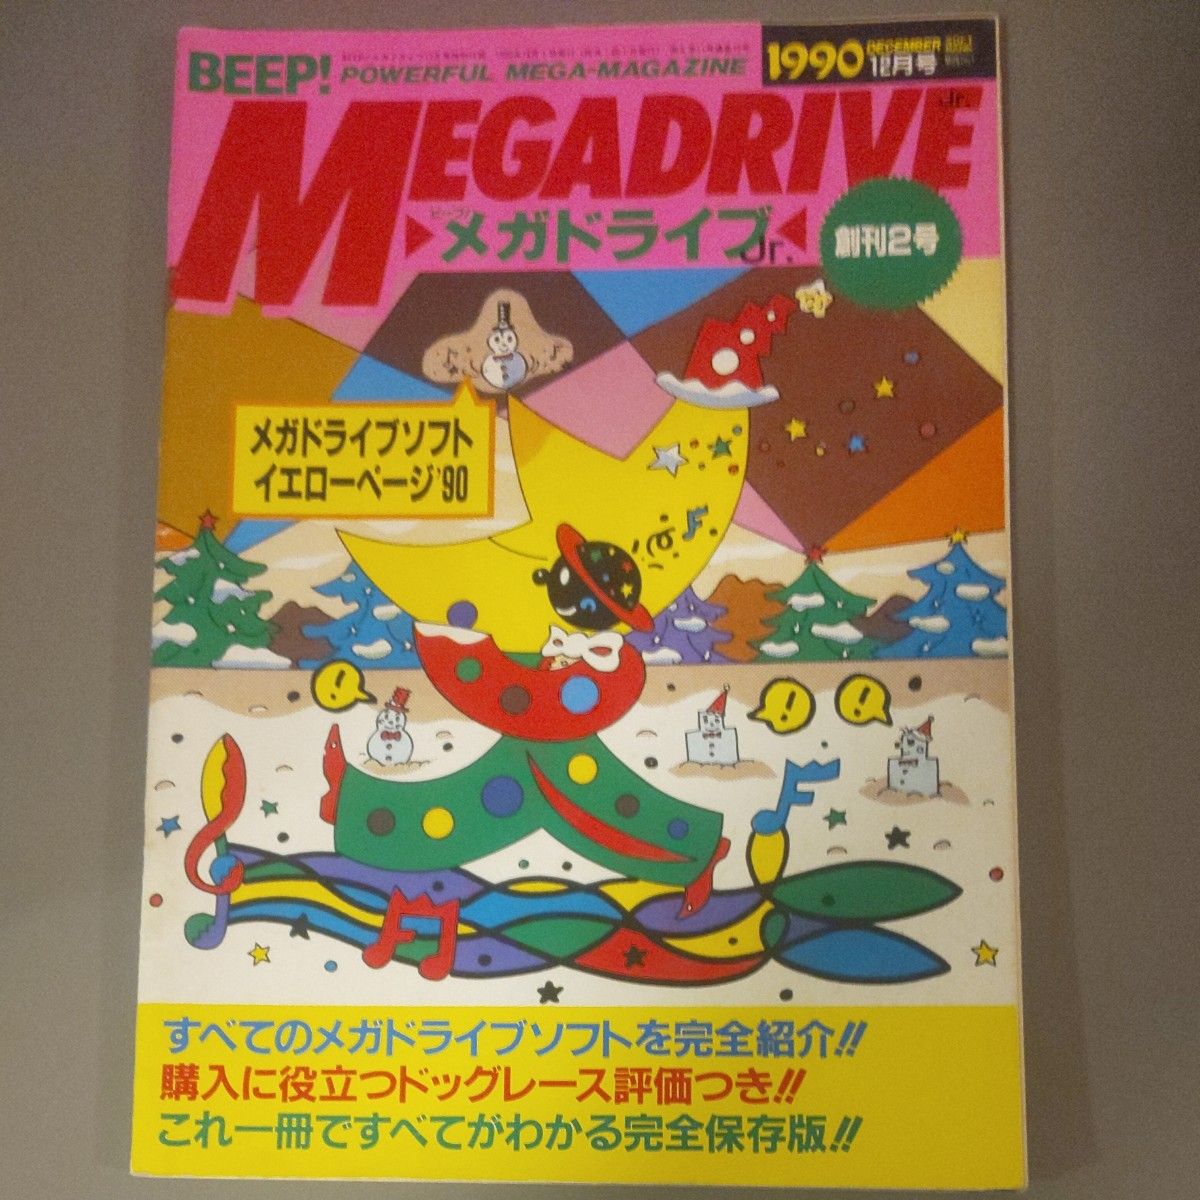 BEEPメガドライブ 増刊2号+増刊3号 1990年12月号 1991年1月号  2冊 攻略法  攻略本  MD メガドライブ